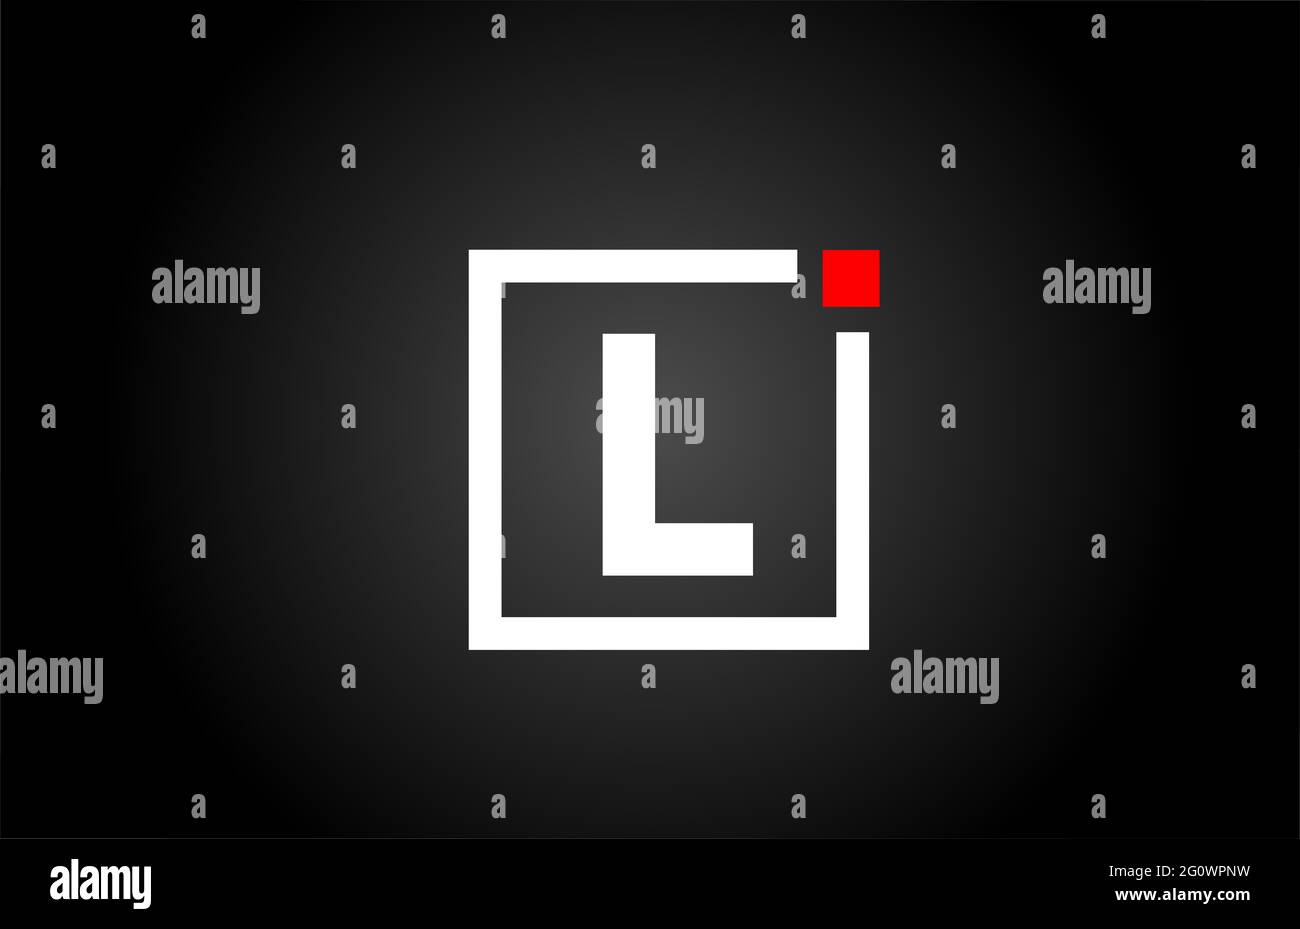 L logo con l'icona della lettera alfabetica in bianco e nero. Design aziendale e aziendale con punto quadrato e rosso. Modello di identità aziendale creativa Foto Stock